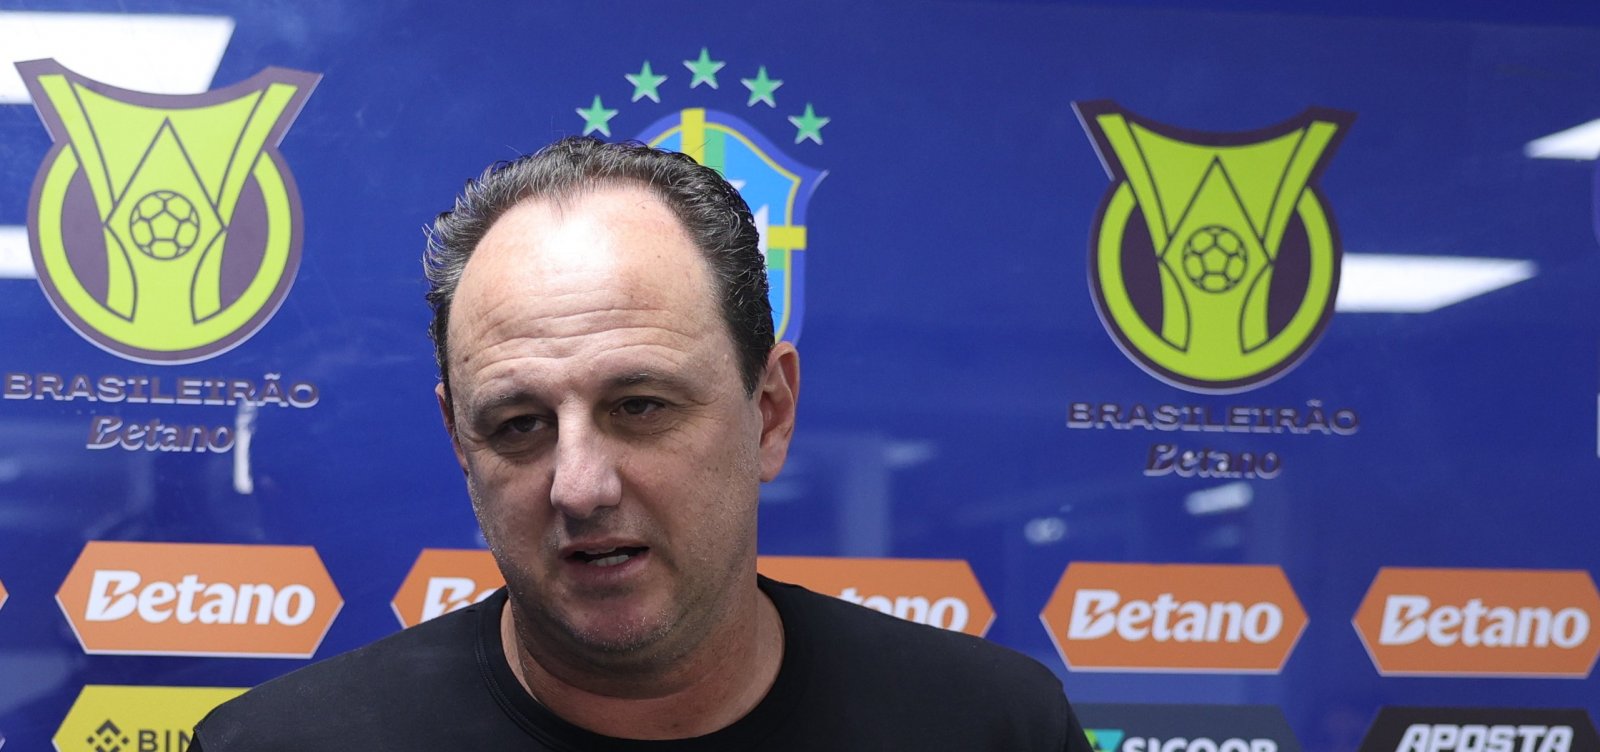 Ceni vê confronto 'parelho' contra o Palmeiras e defende Jean Lucas: "Não adianta culpar"